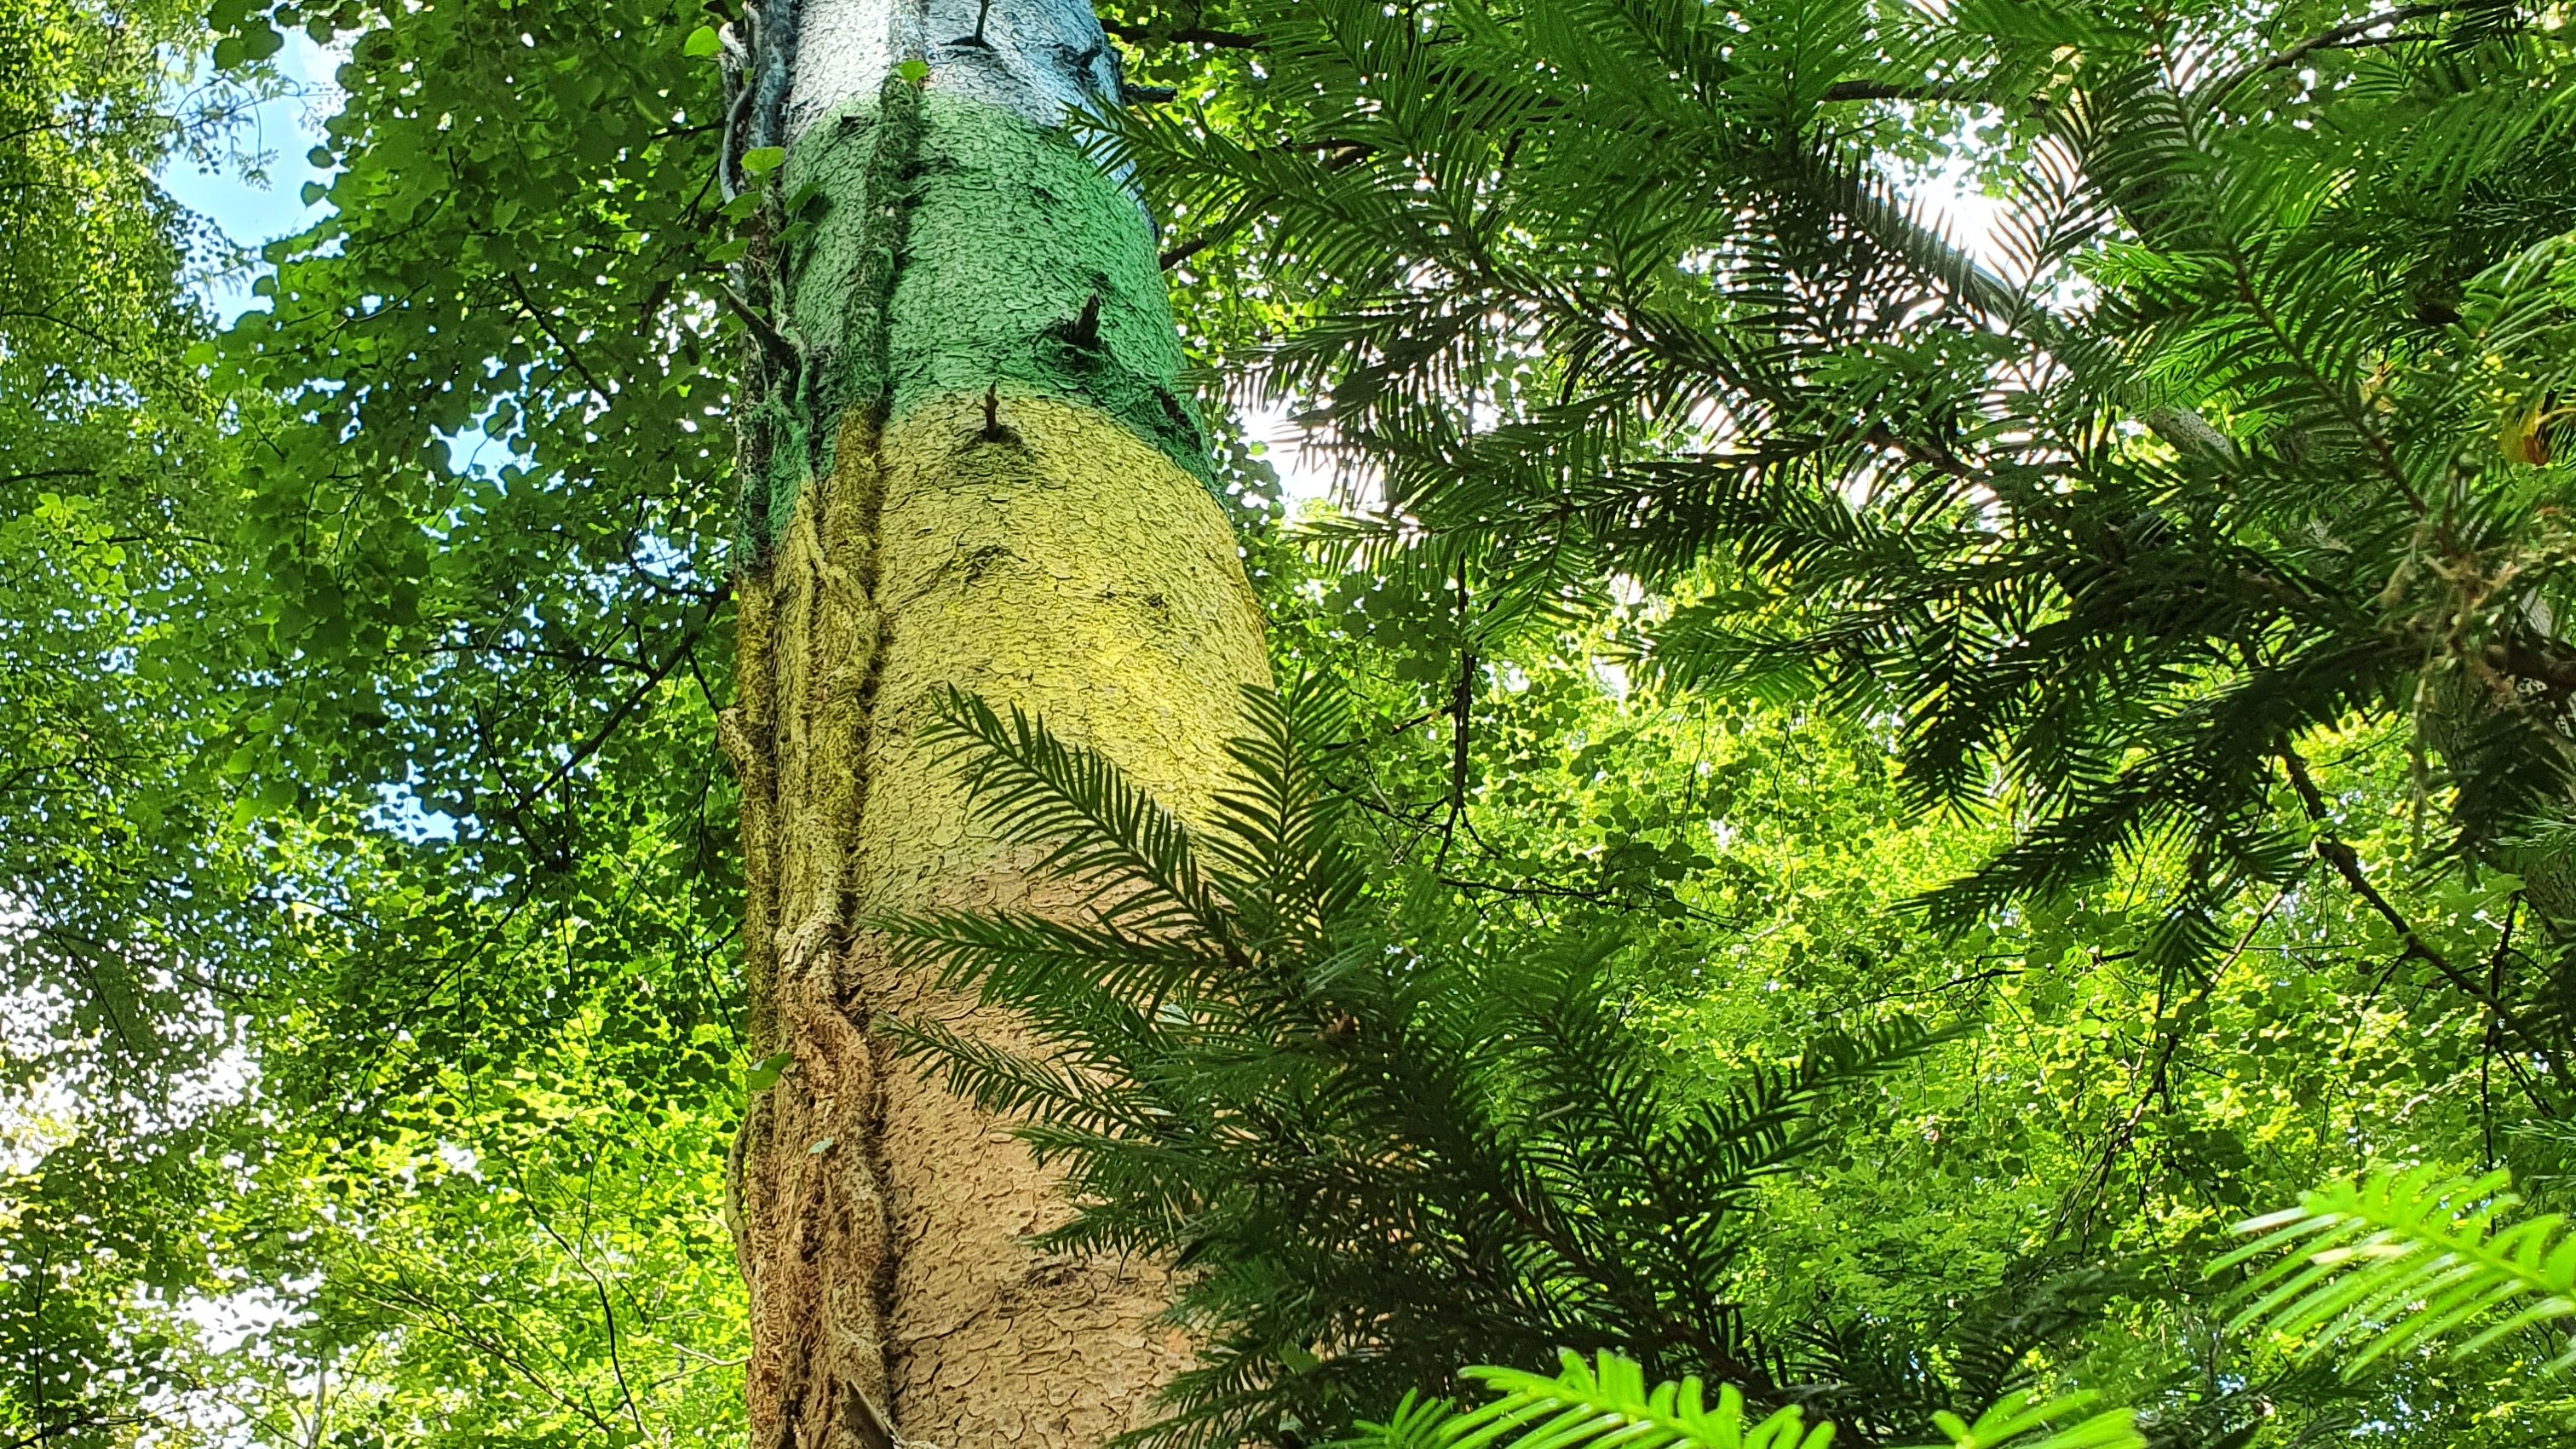 Fotografie eines Baumes der in Regenbogenfarben angemalt ist